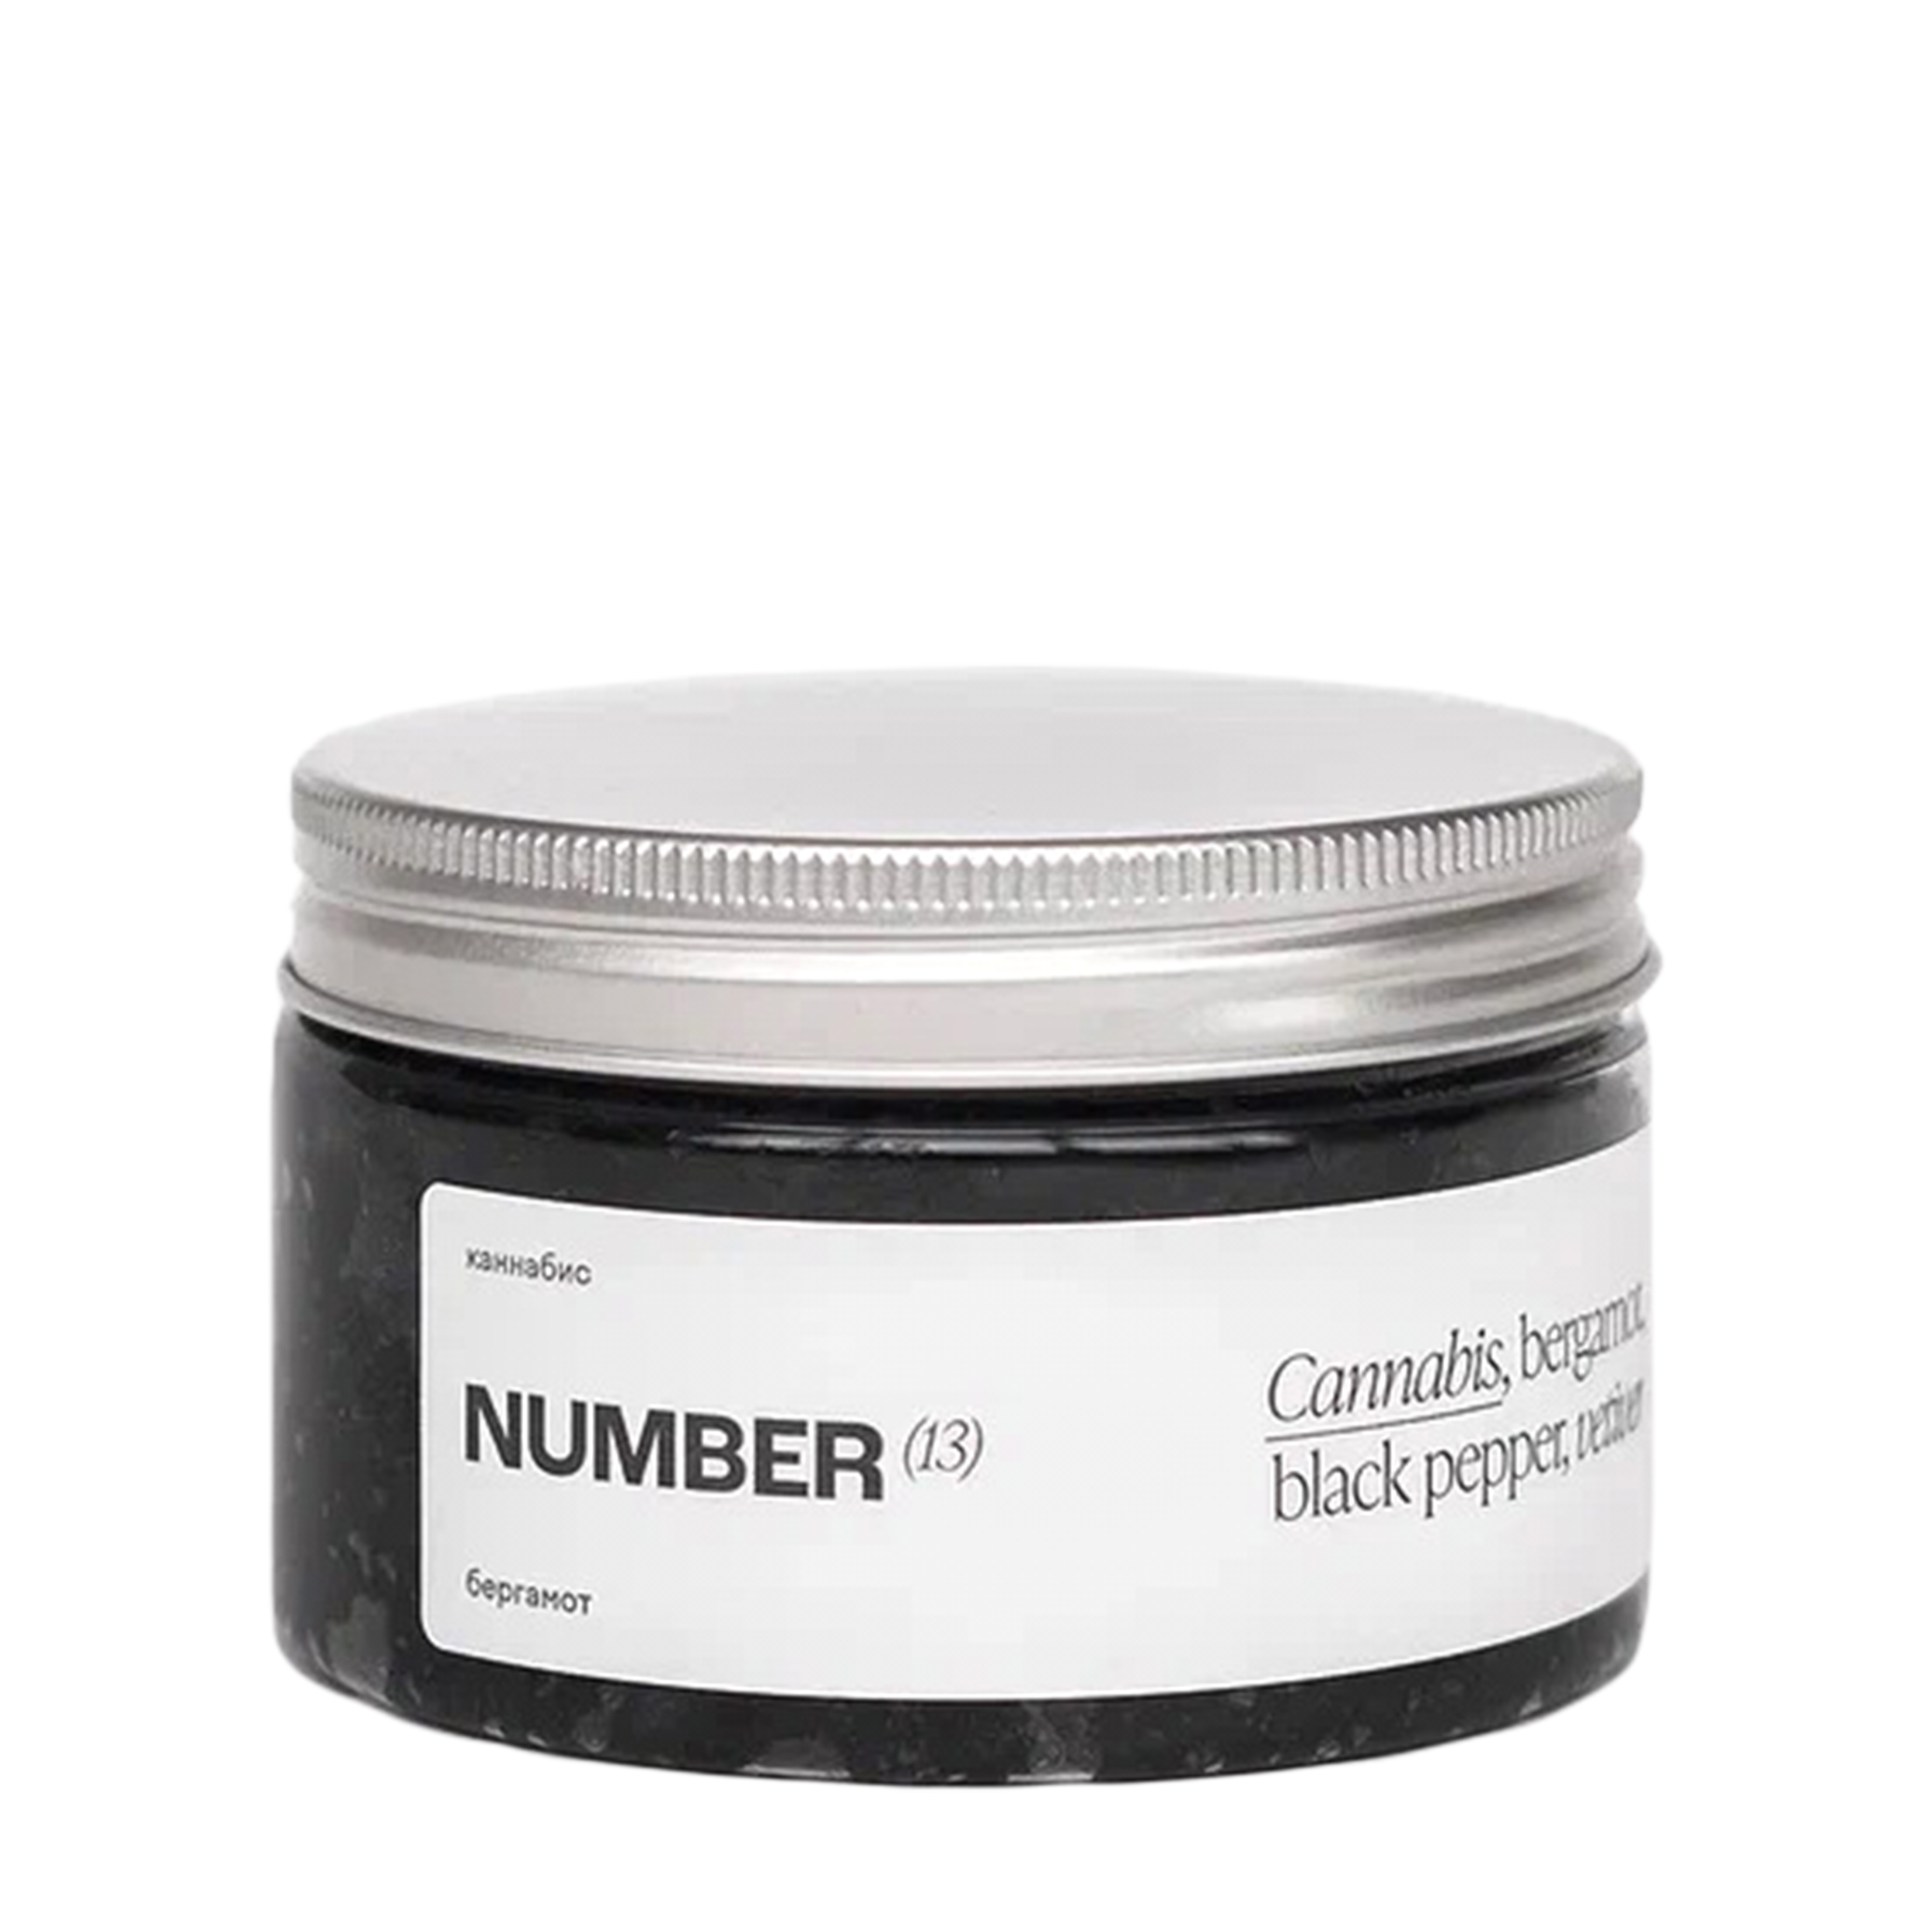 NUMBER(13) NUMBER(13) Солевой скраб для тела с бамбуковым углем с ароматом «Каннабис, бергамот, черный перец, ветивер» 250 мл